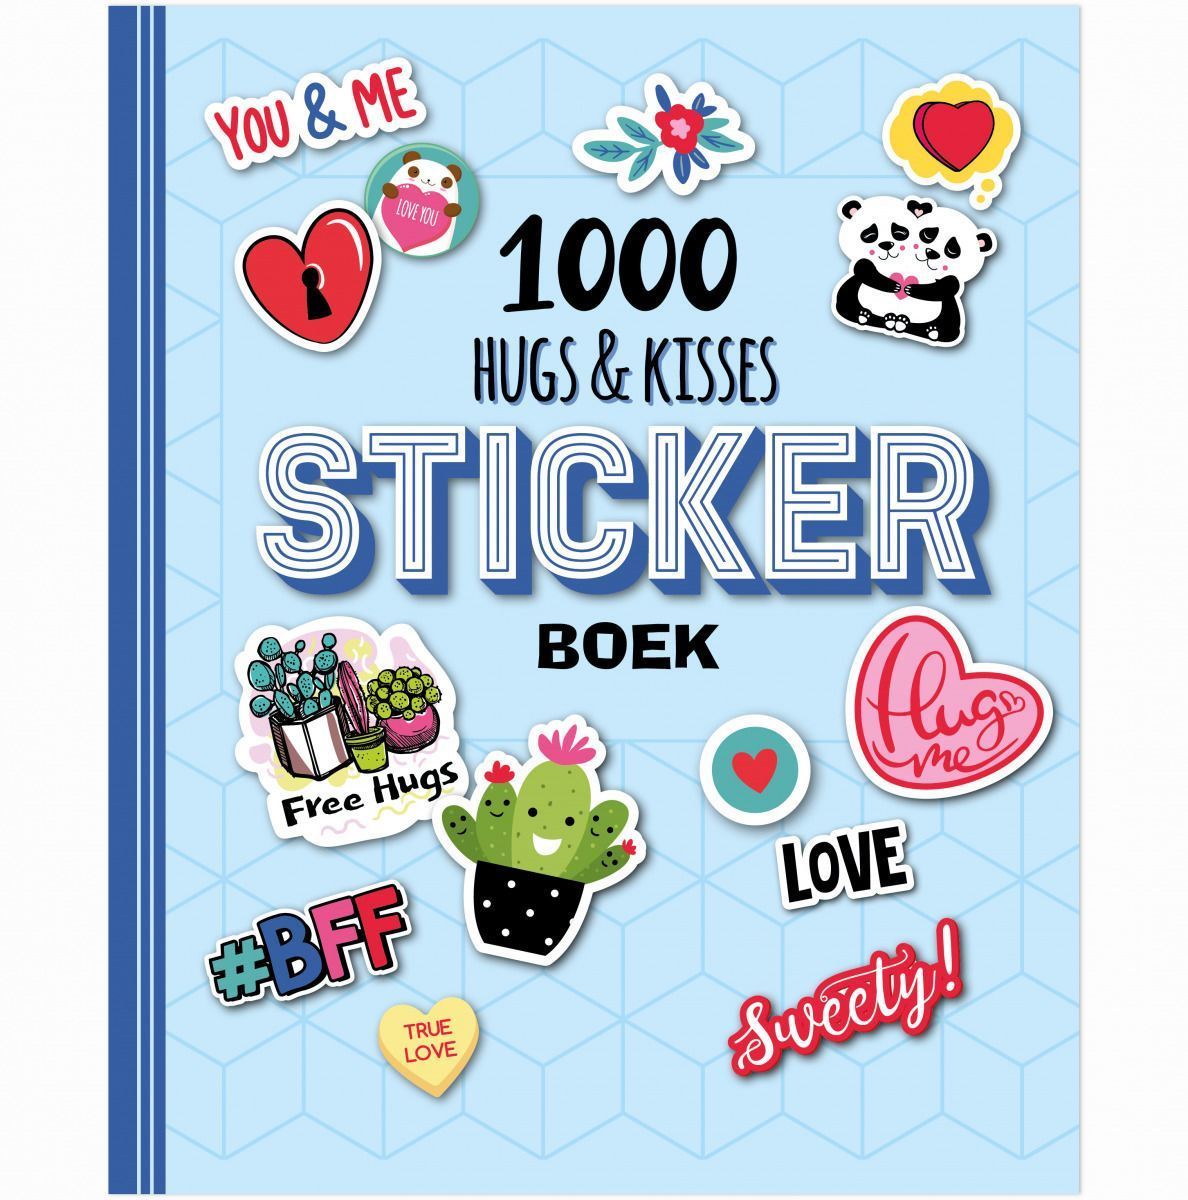 kin Bedrijfsomschrijving Wild Stickerboek - 1000 Hugs & Kisses Kopen? ⋆ Invulboekjes.nl